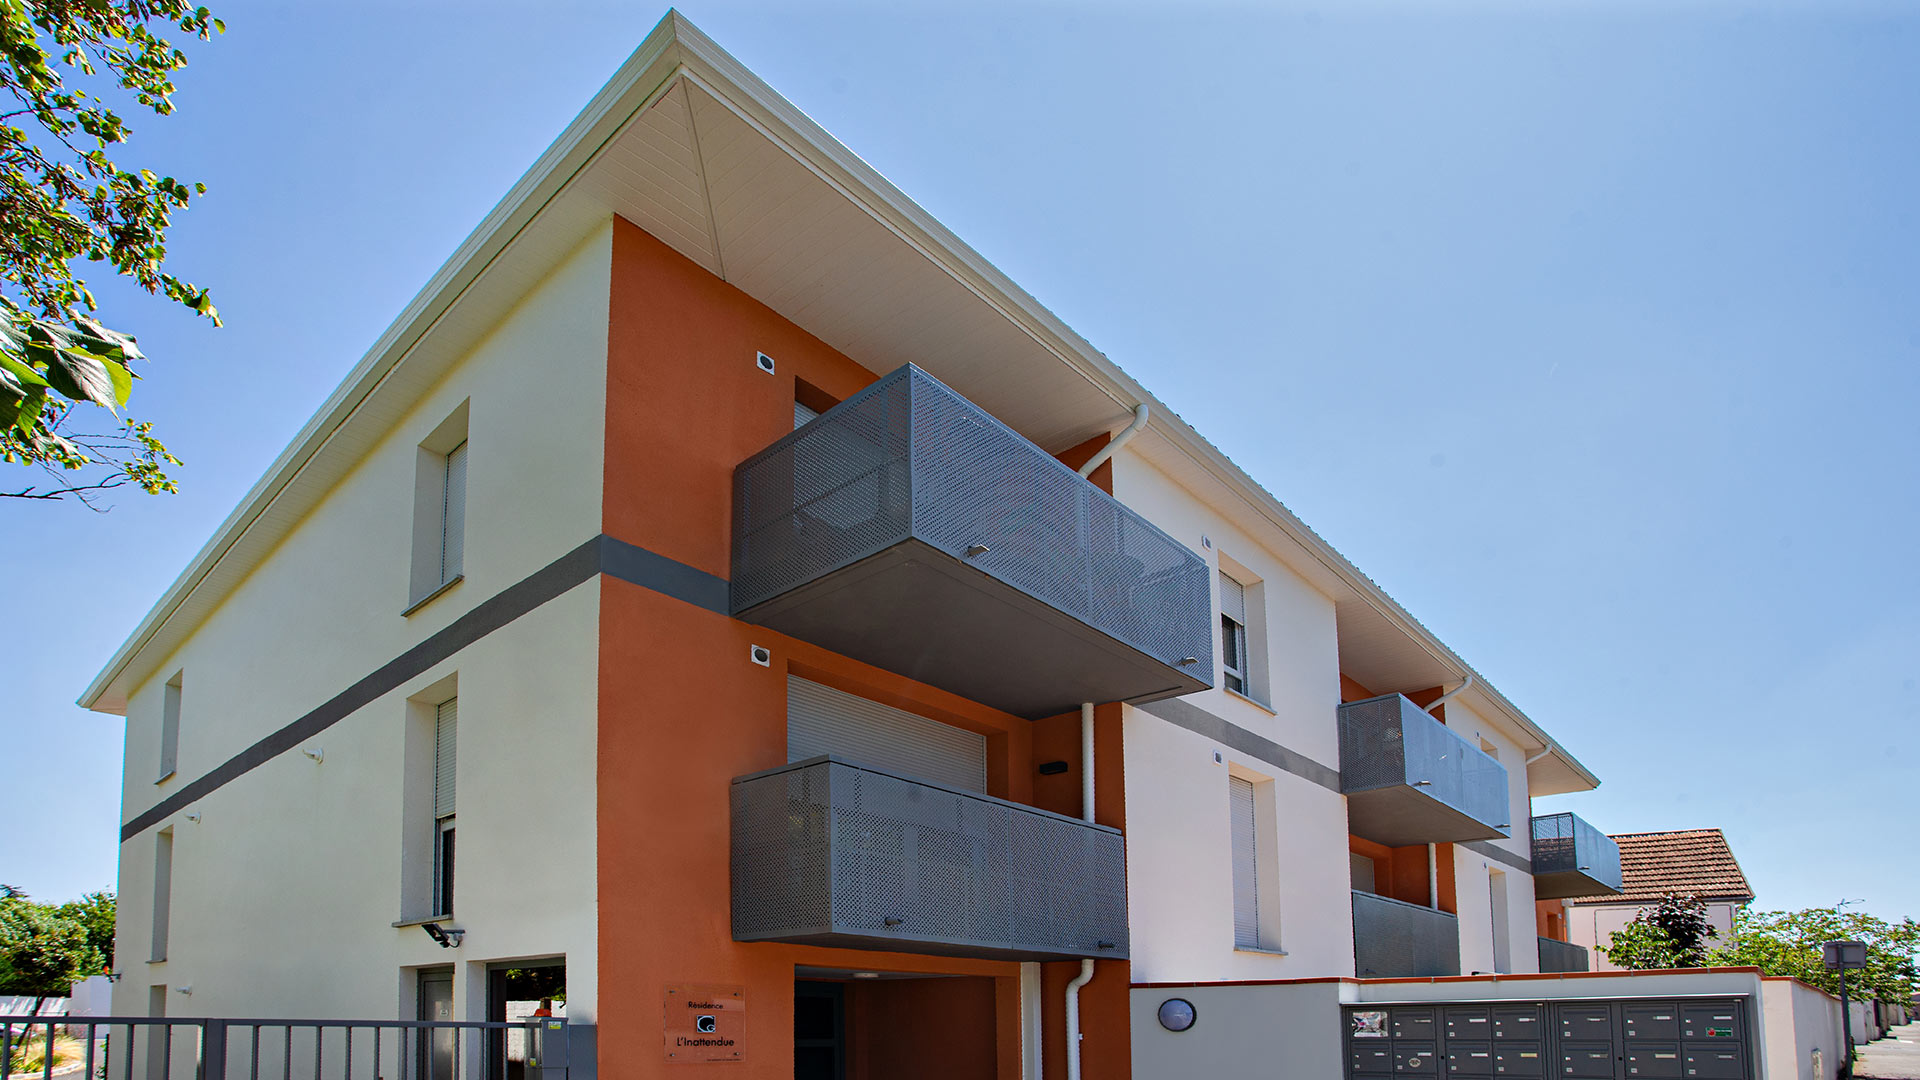 Copropriété moderne et tout confort de 20 appartements au cœur du quartier de Toulouse Lardenne.